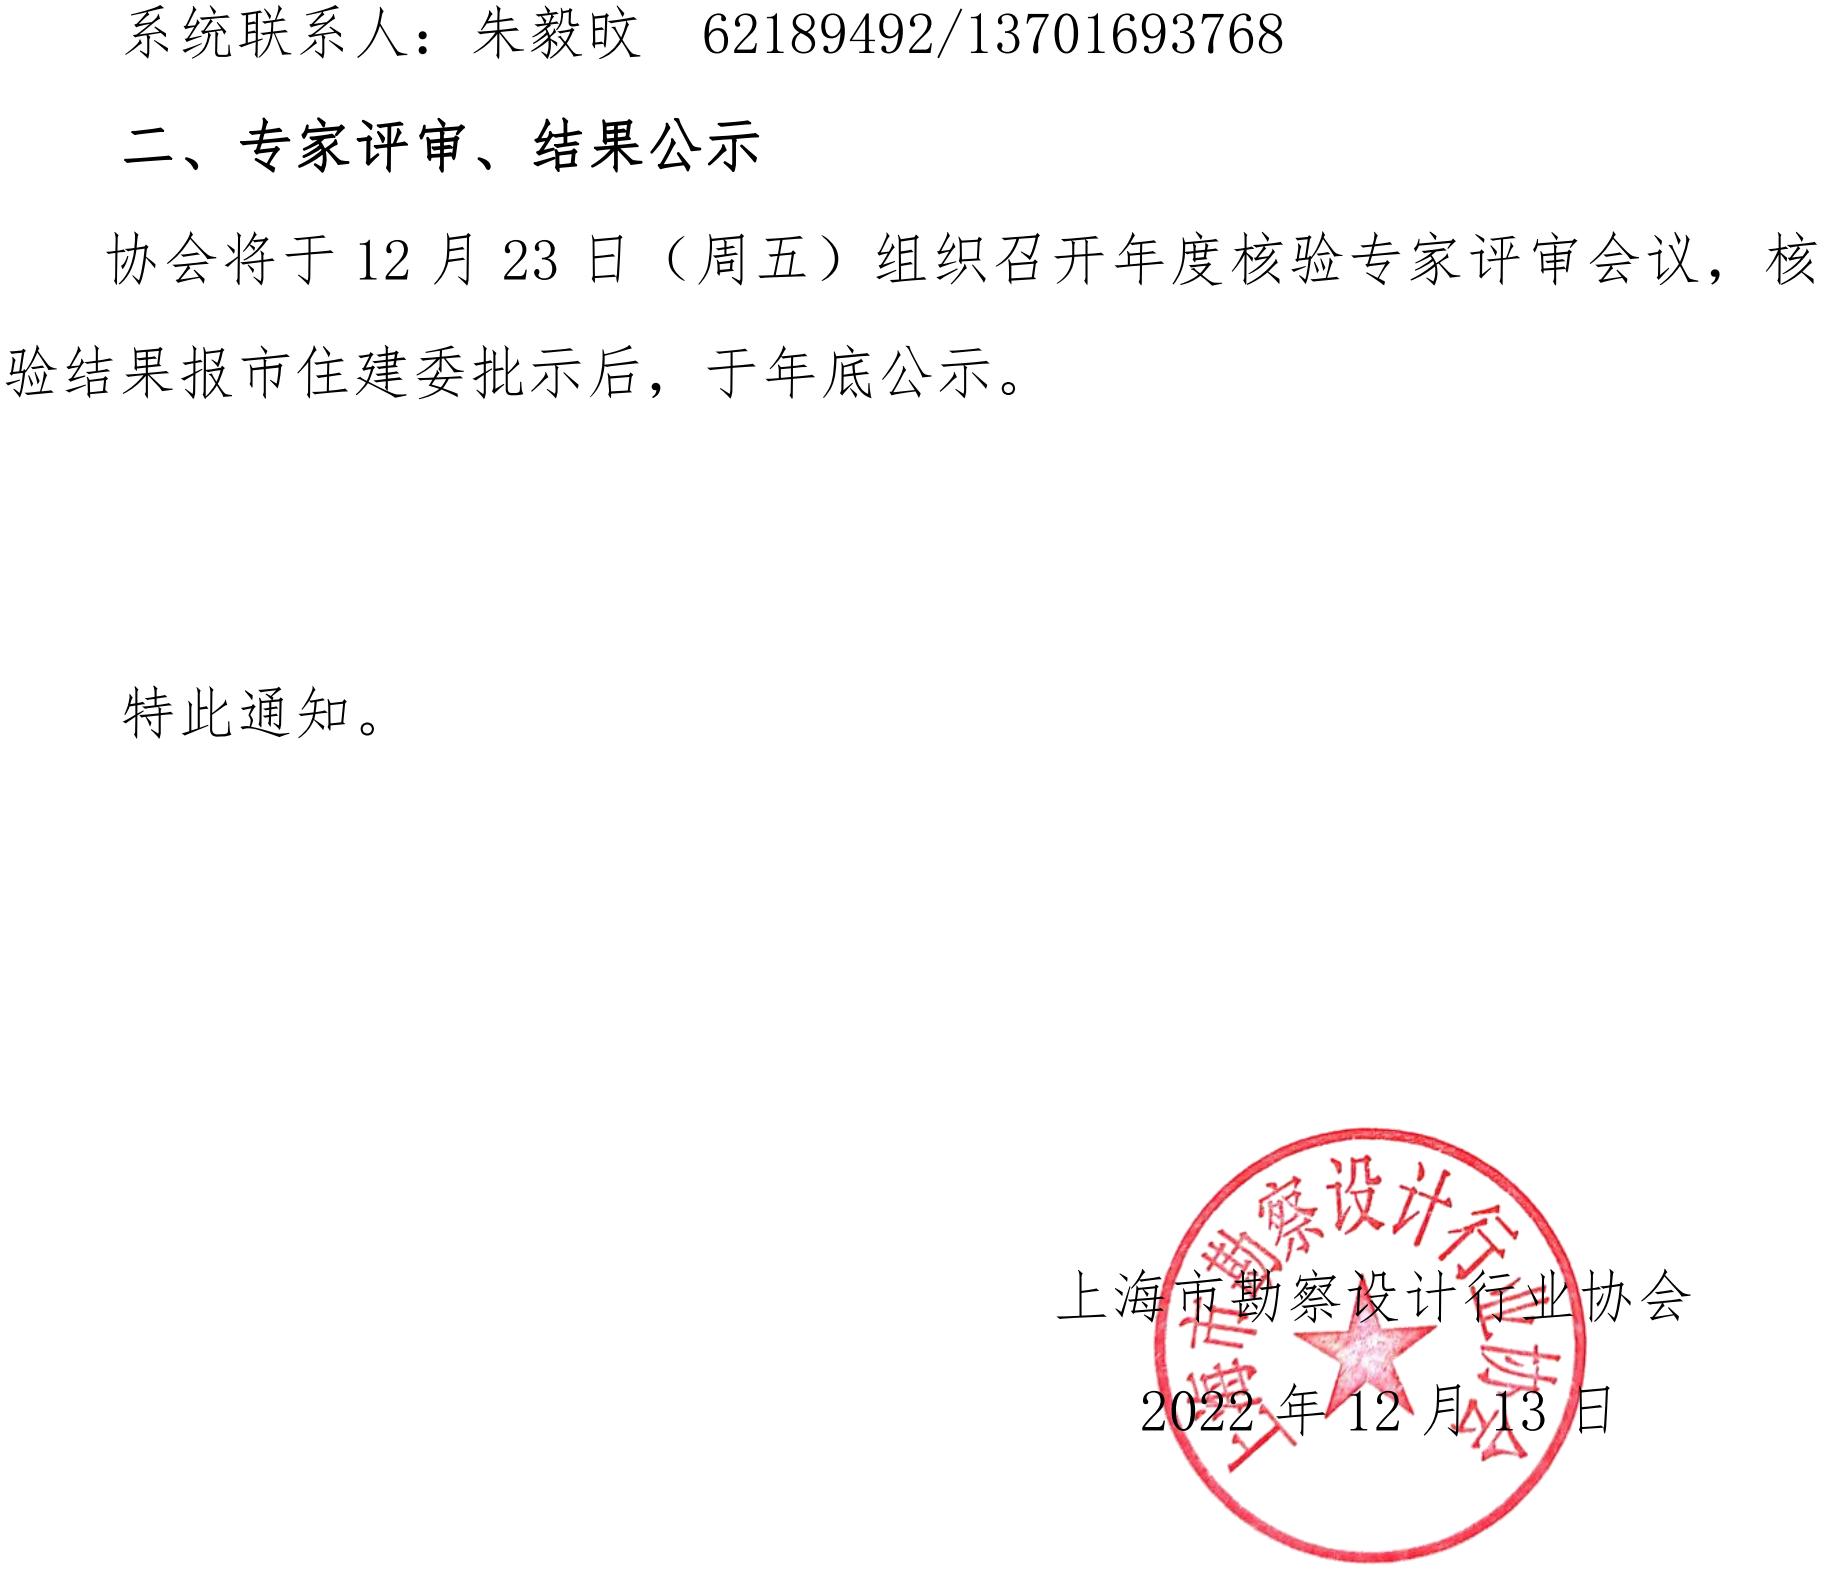 221212 关于开展上海市乡村建筑师（第一批） 第一年度核验的通知(1)_01.jpg